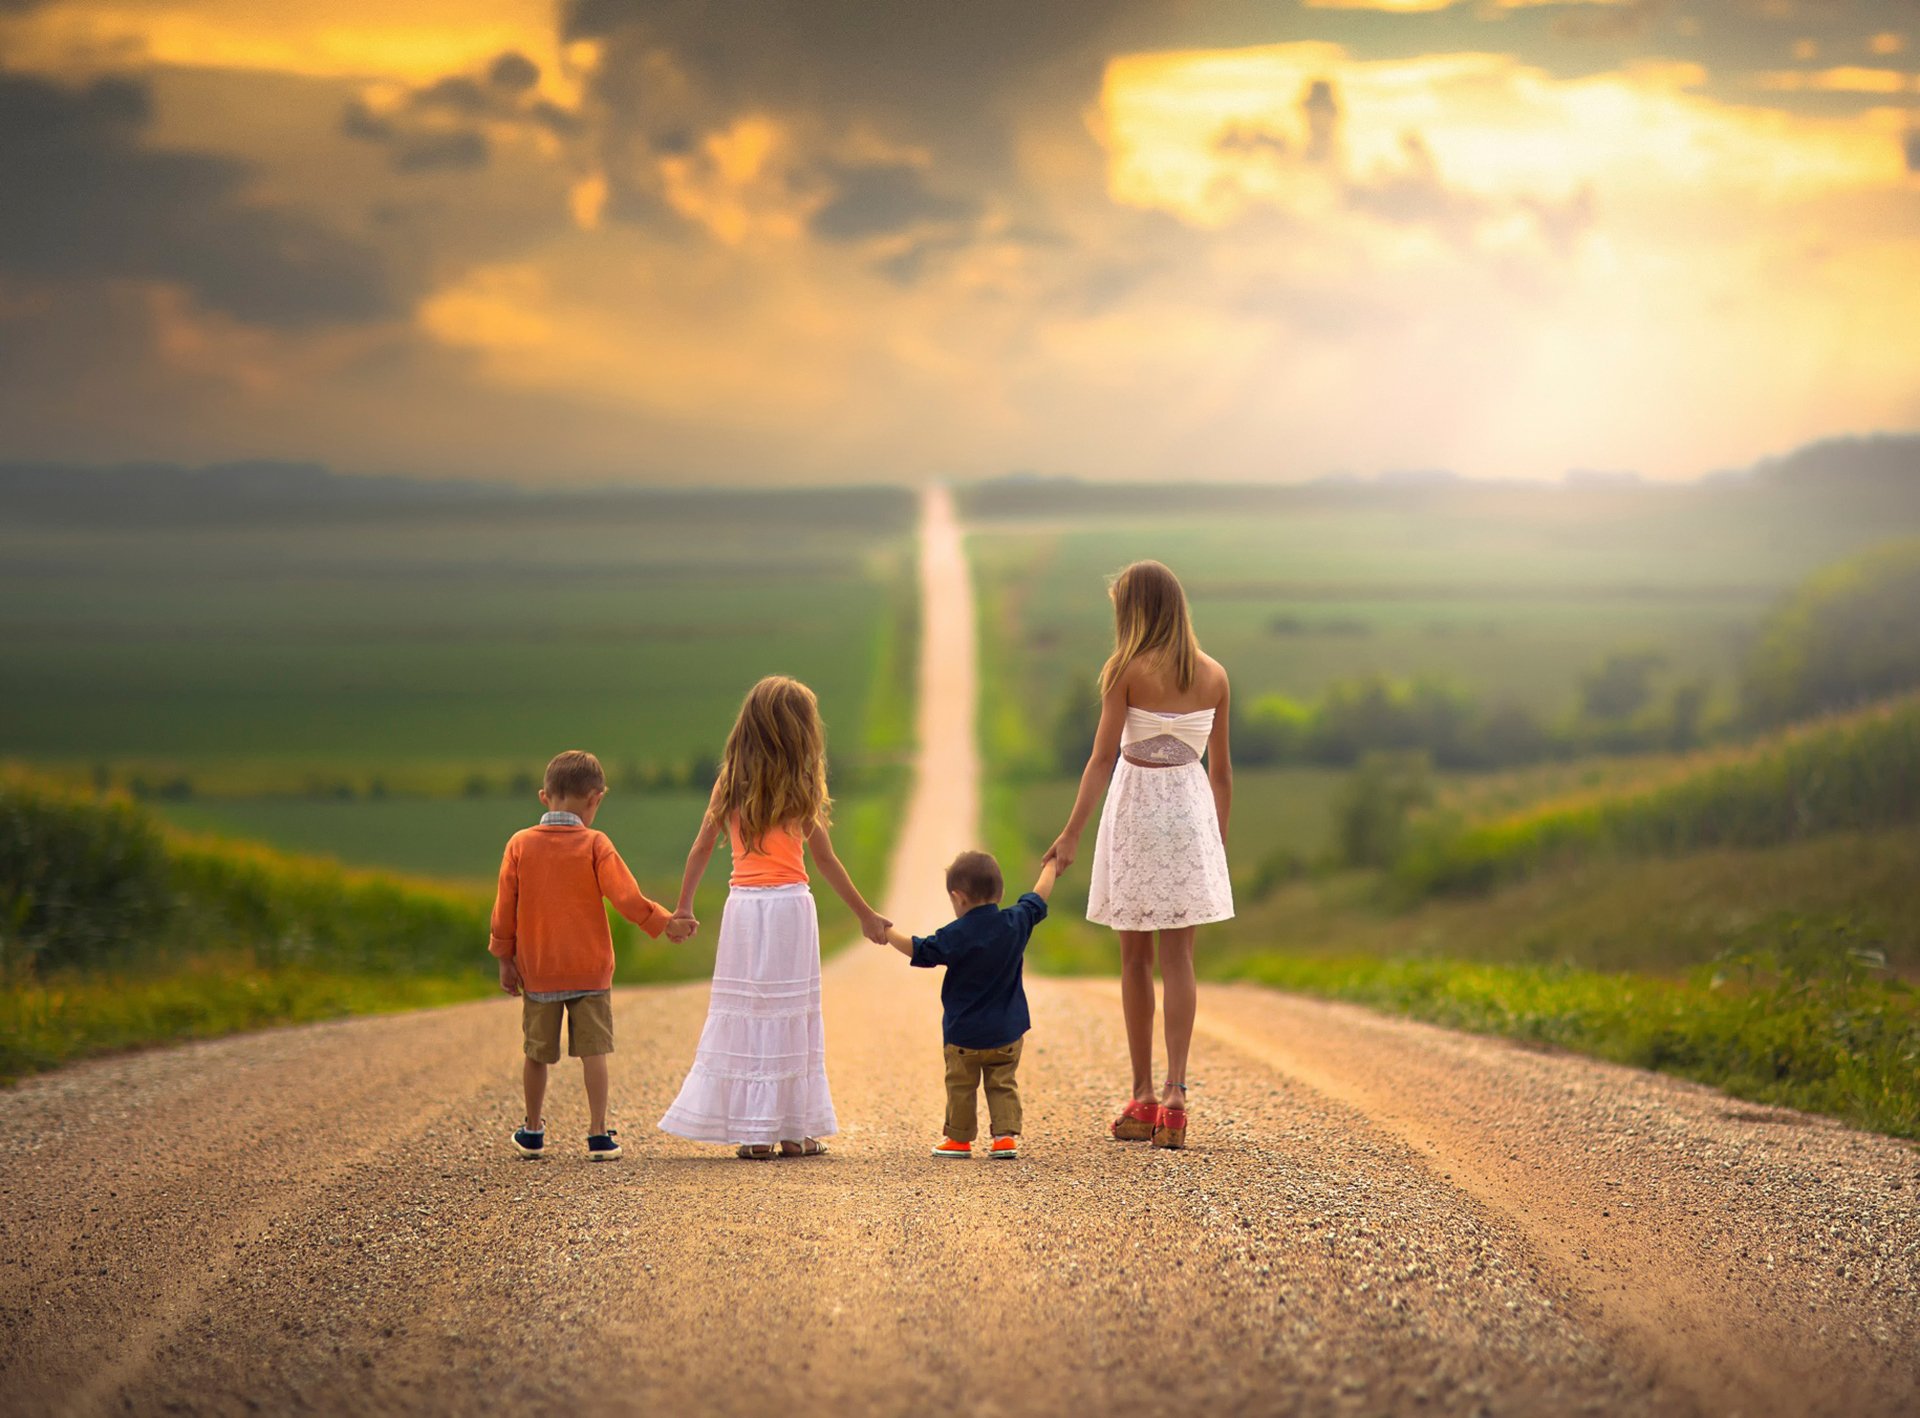 Счастливо идти по жизни. Счастливое будущее детей. Счастливая дорога. Счастливая семья идет по дороге. Дети идут по дороге.